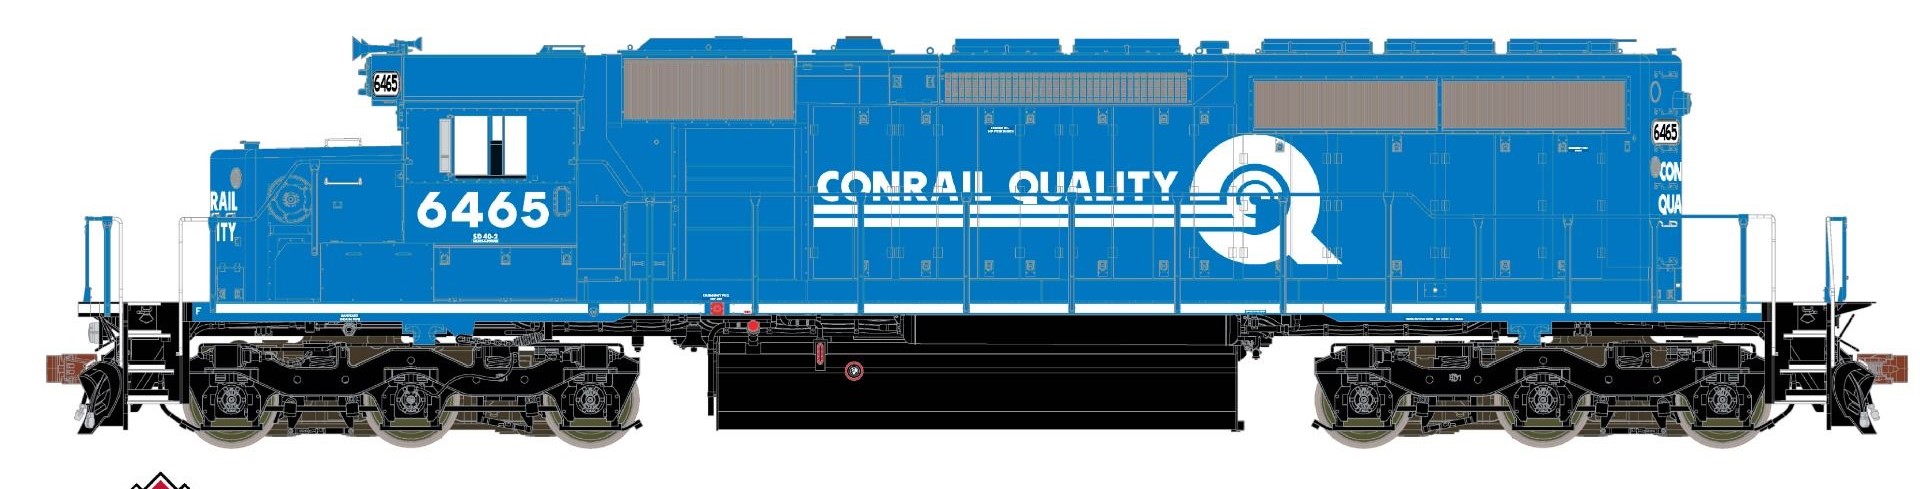 ScaleTrains Rivet Counter HO SXT38791 DCC/ESU Loksound 5 Equipped EMD SD40-2 Locomotive w/Ditch Lights Conrail Small 'Quality' Logo CR #6442